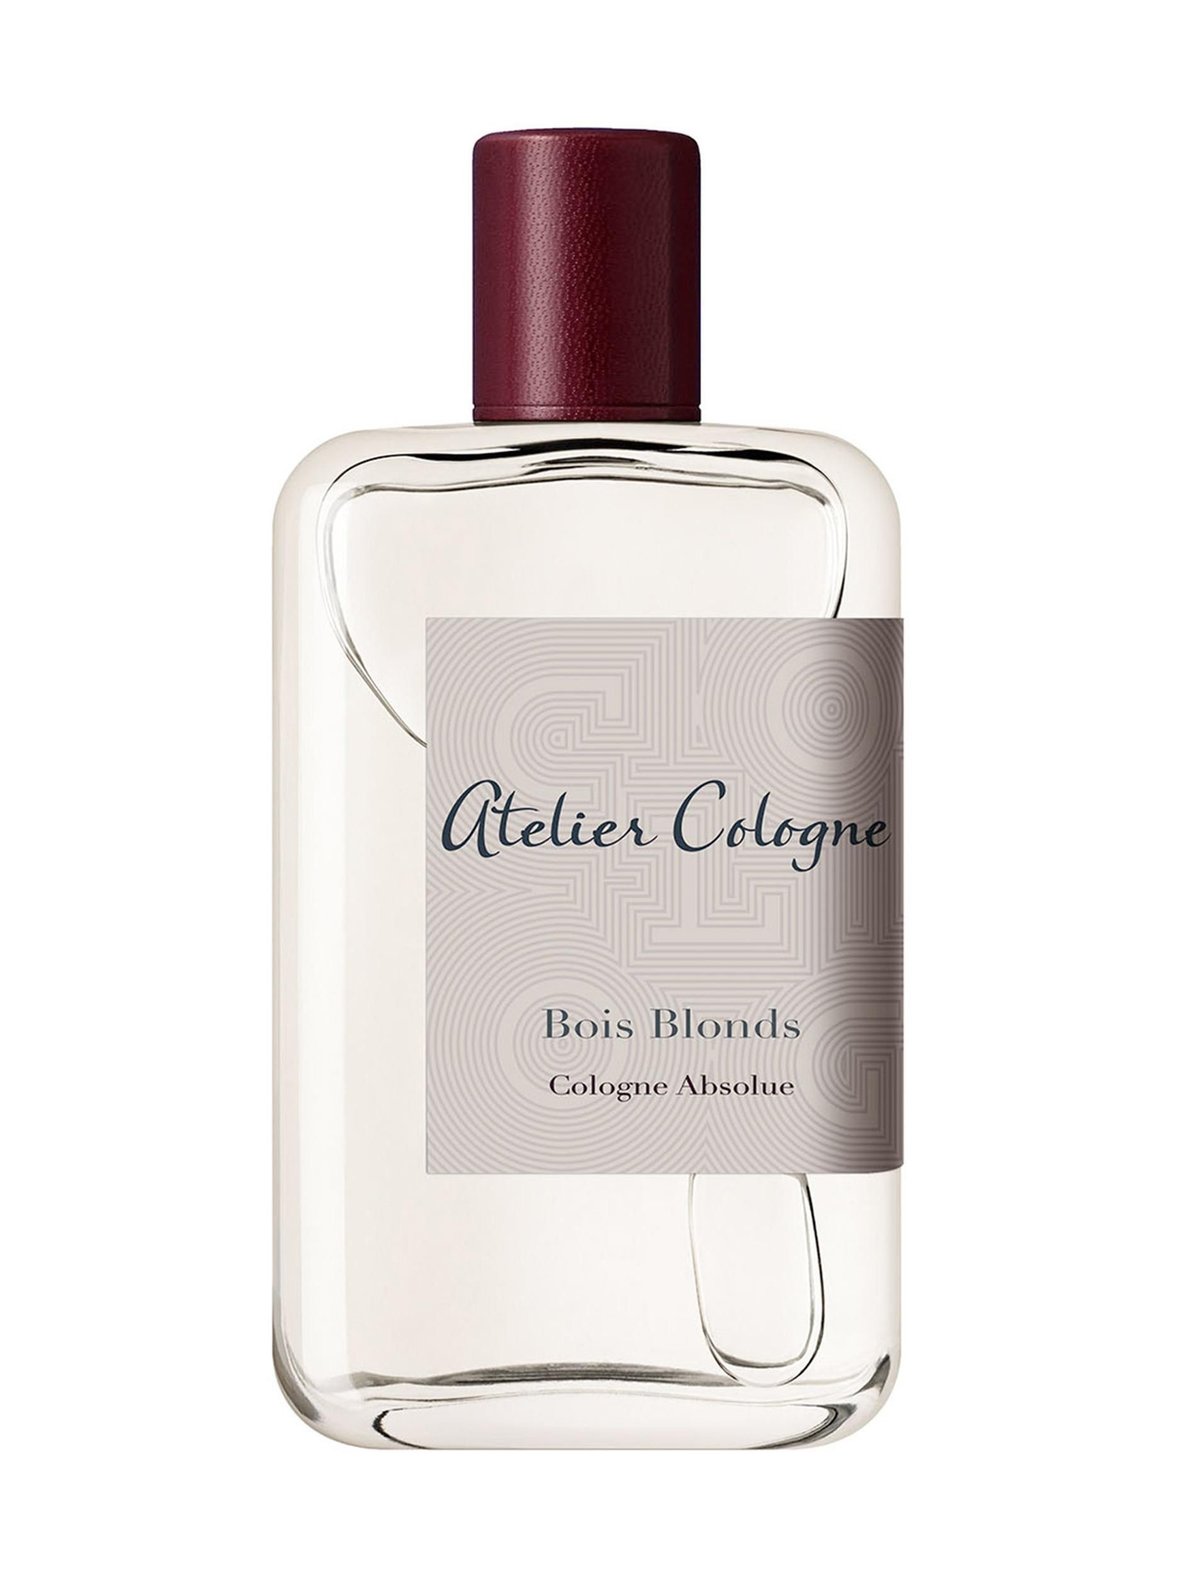 Bois Blonds Cologne Absolue -tuoksu, Atelier Cologne